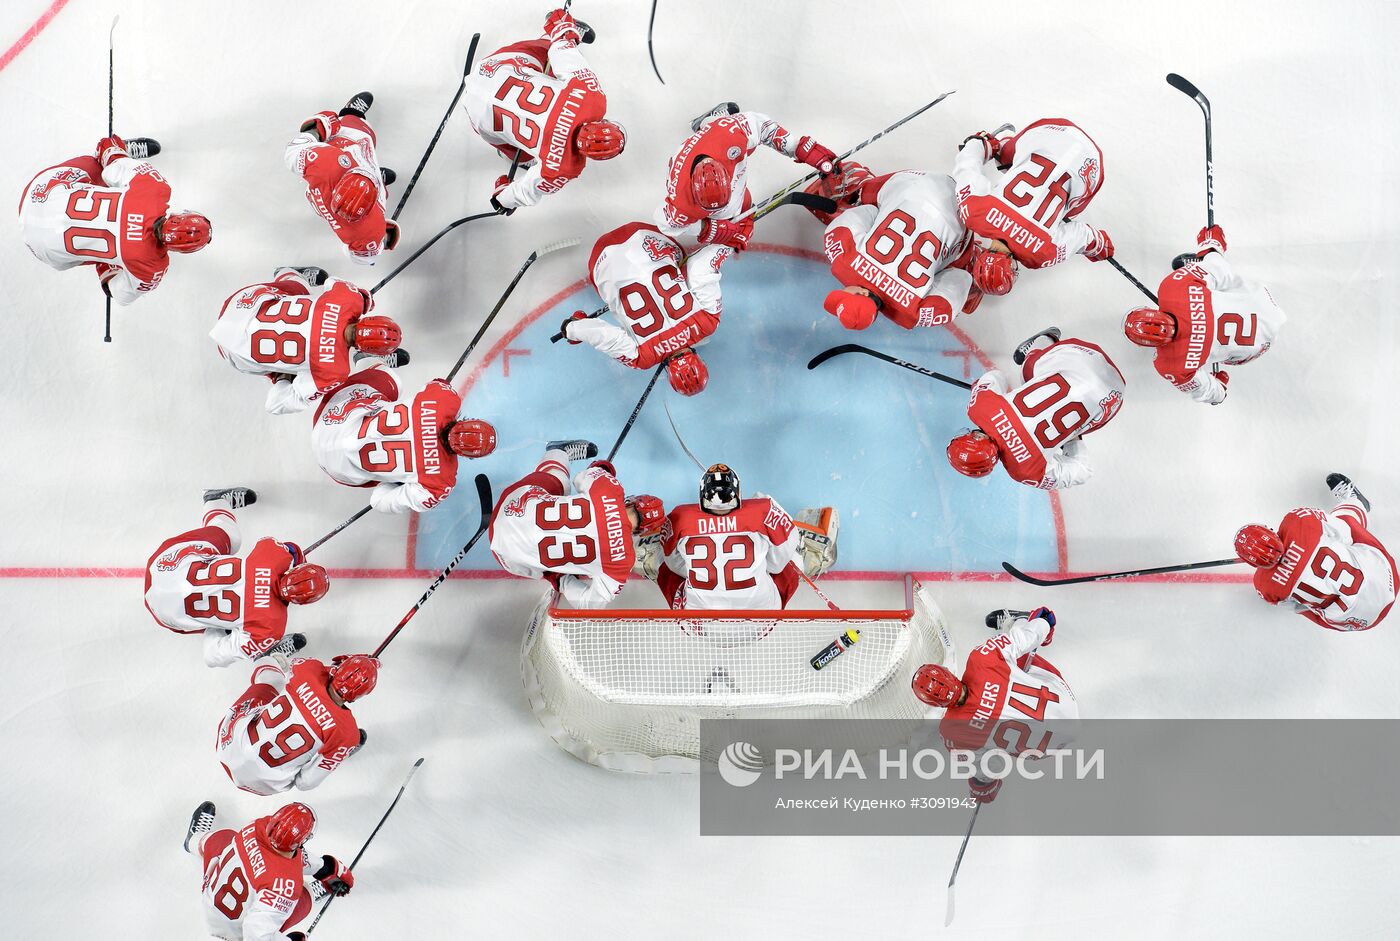 Хоккей. Чемпионат мира. Матч Латвия - Дания